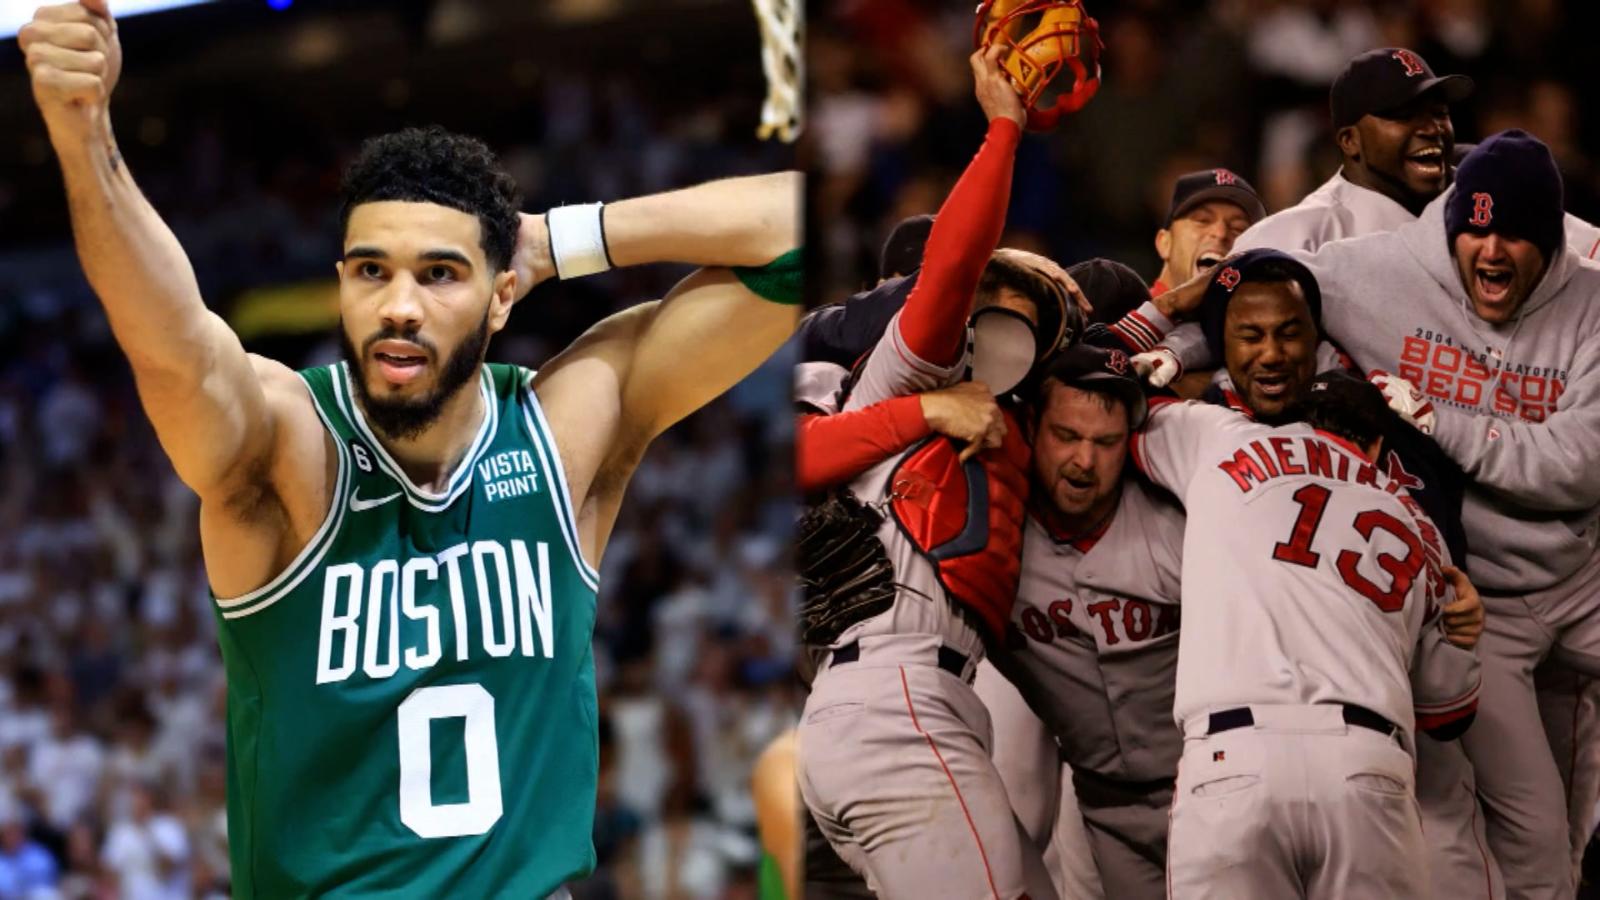 Los Celtics de Boston están al borde de una remontada histórica,
como los Red Sox